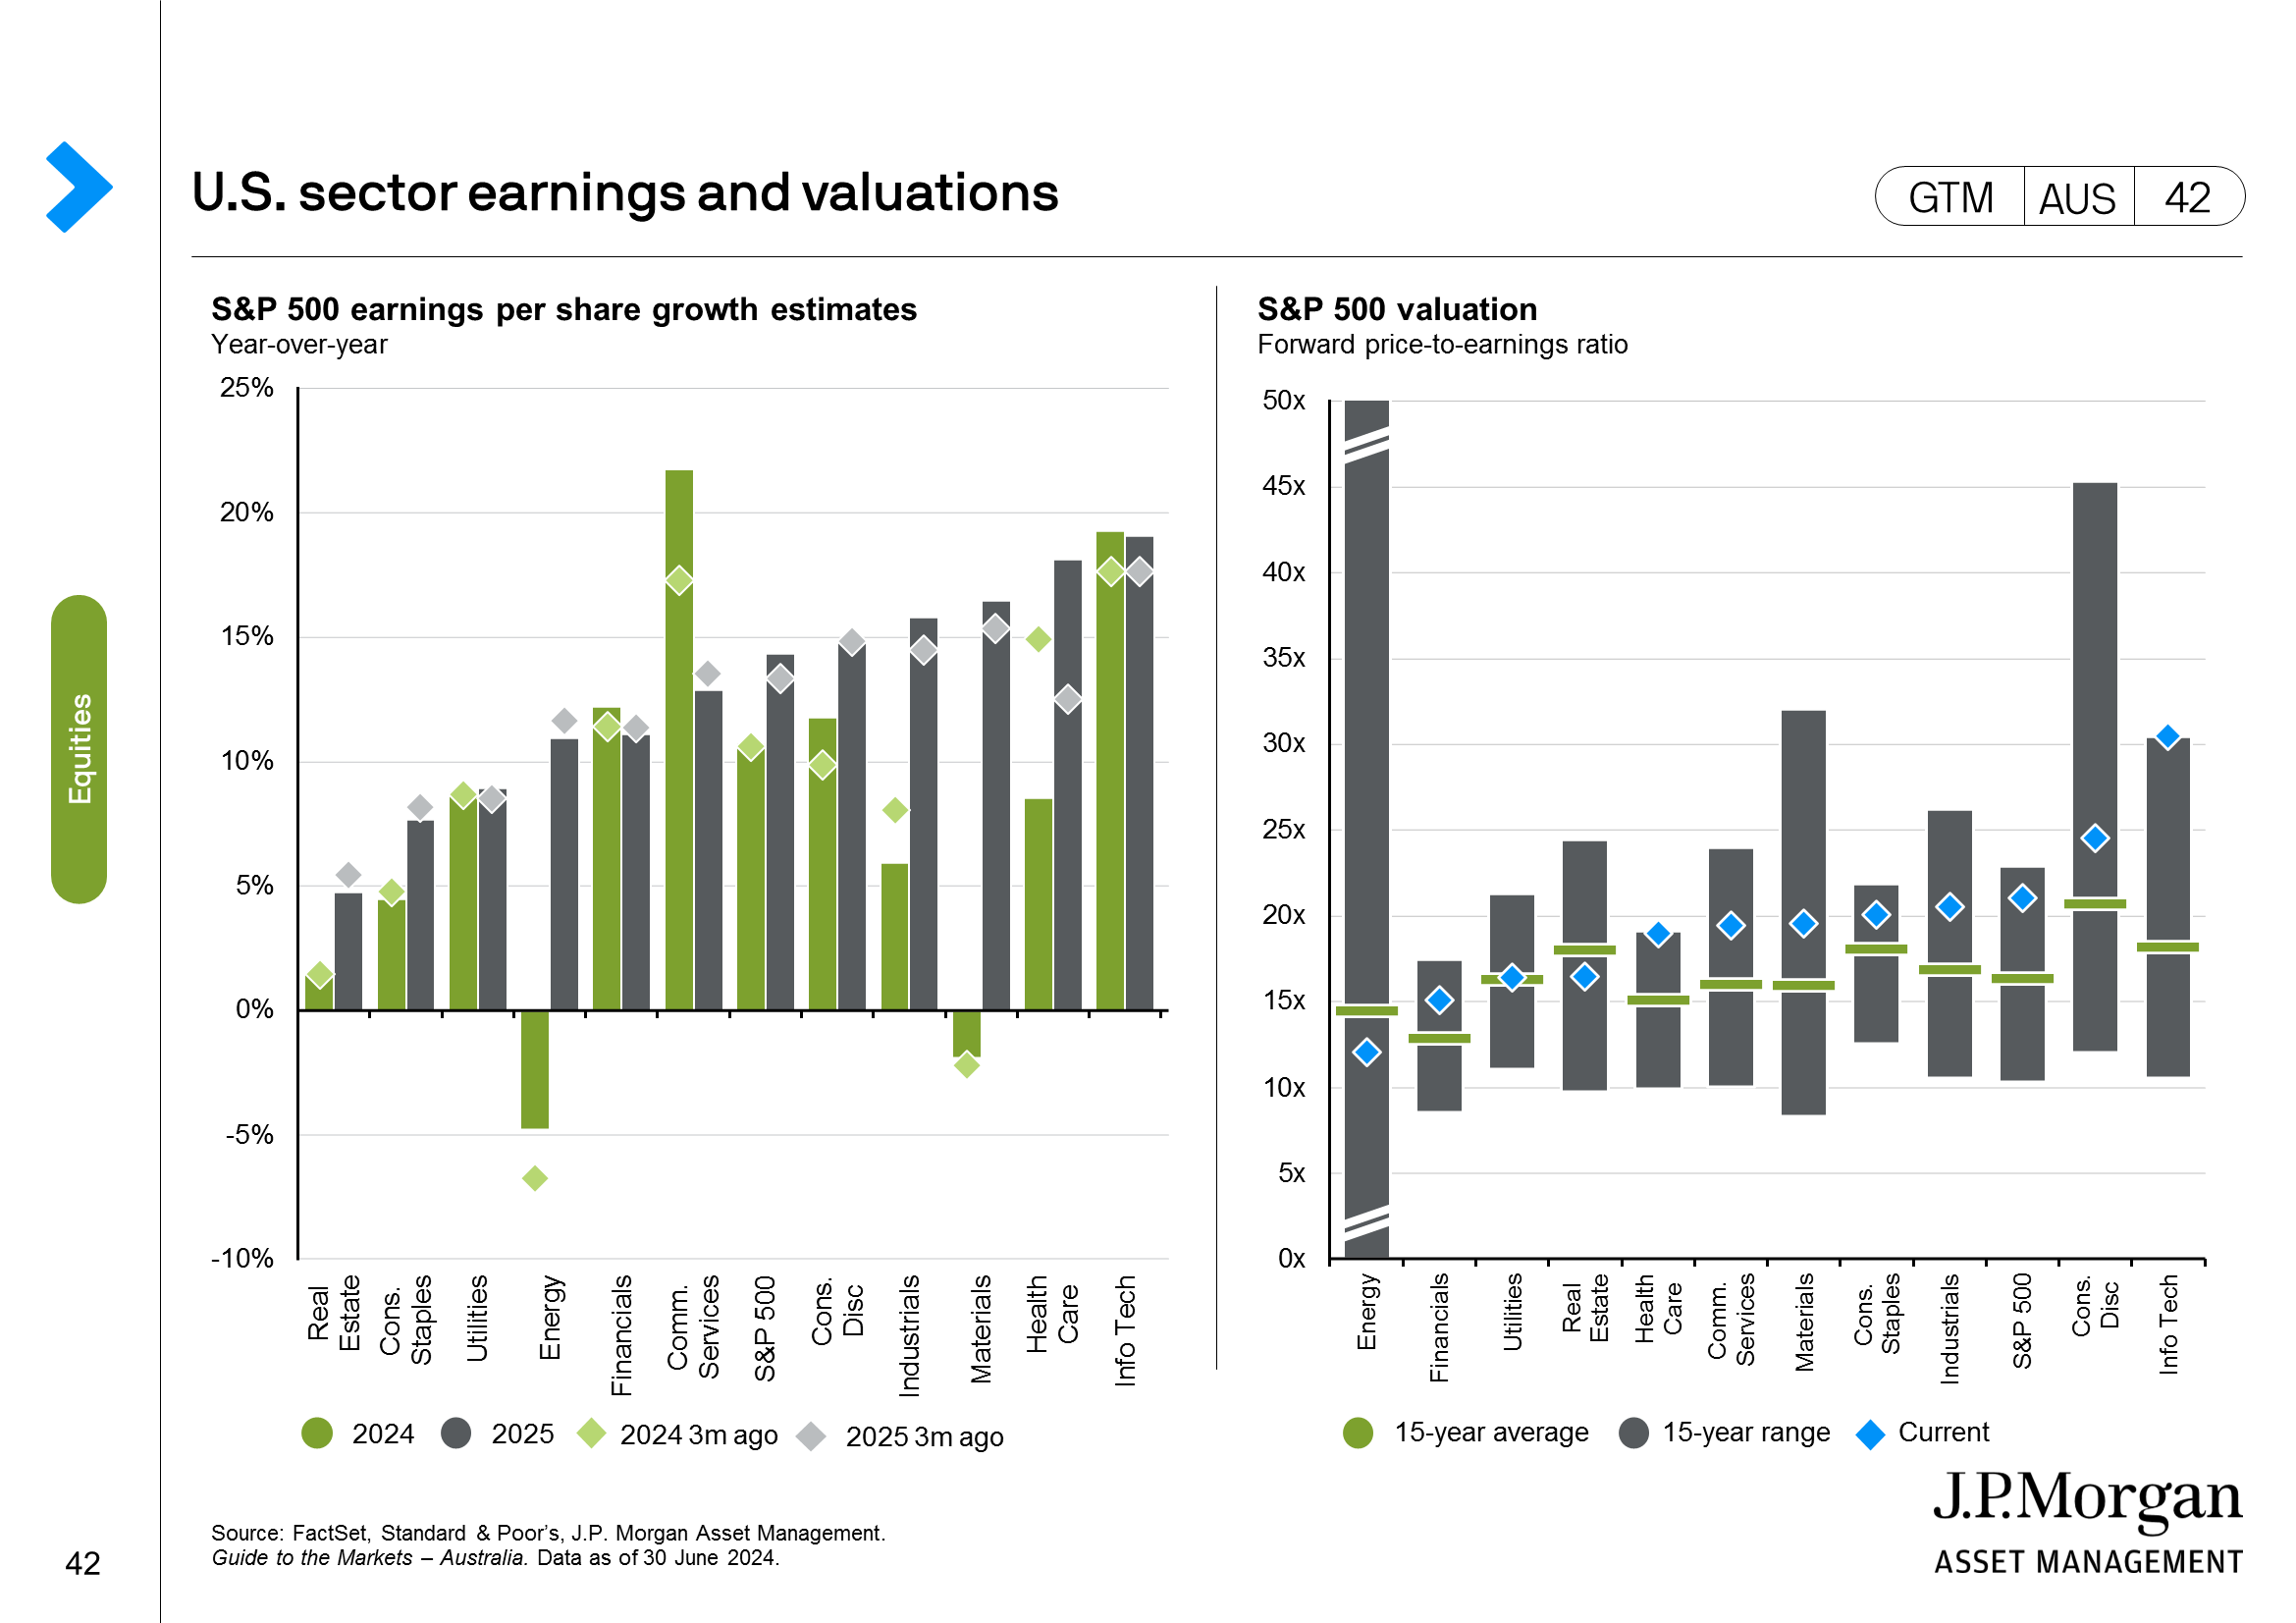 Australia equity valuation